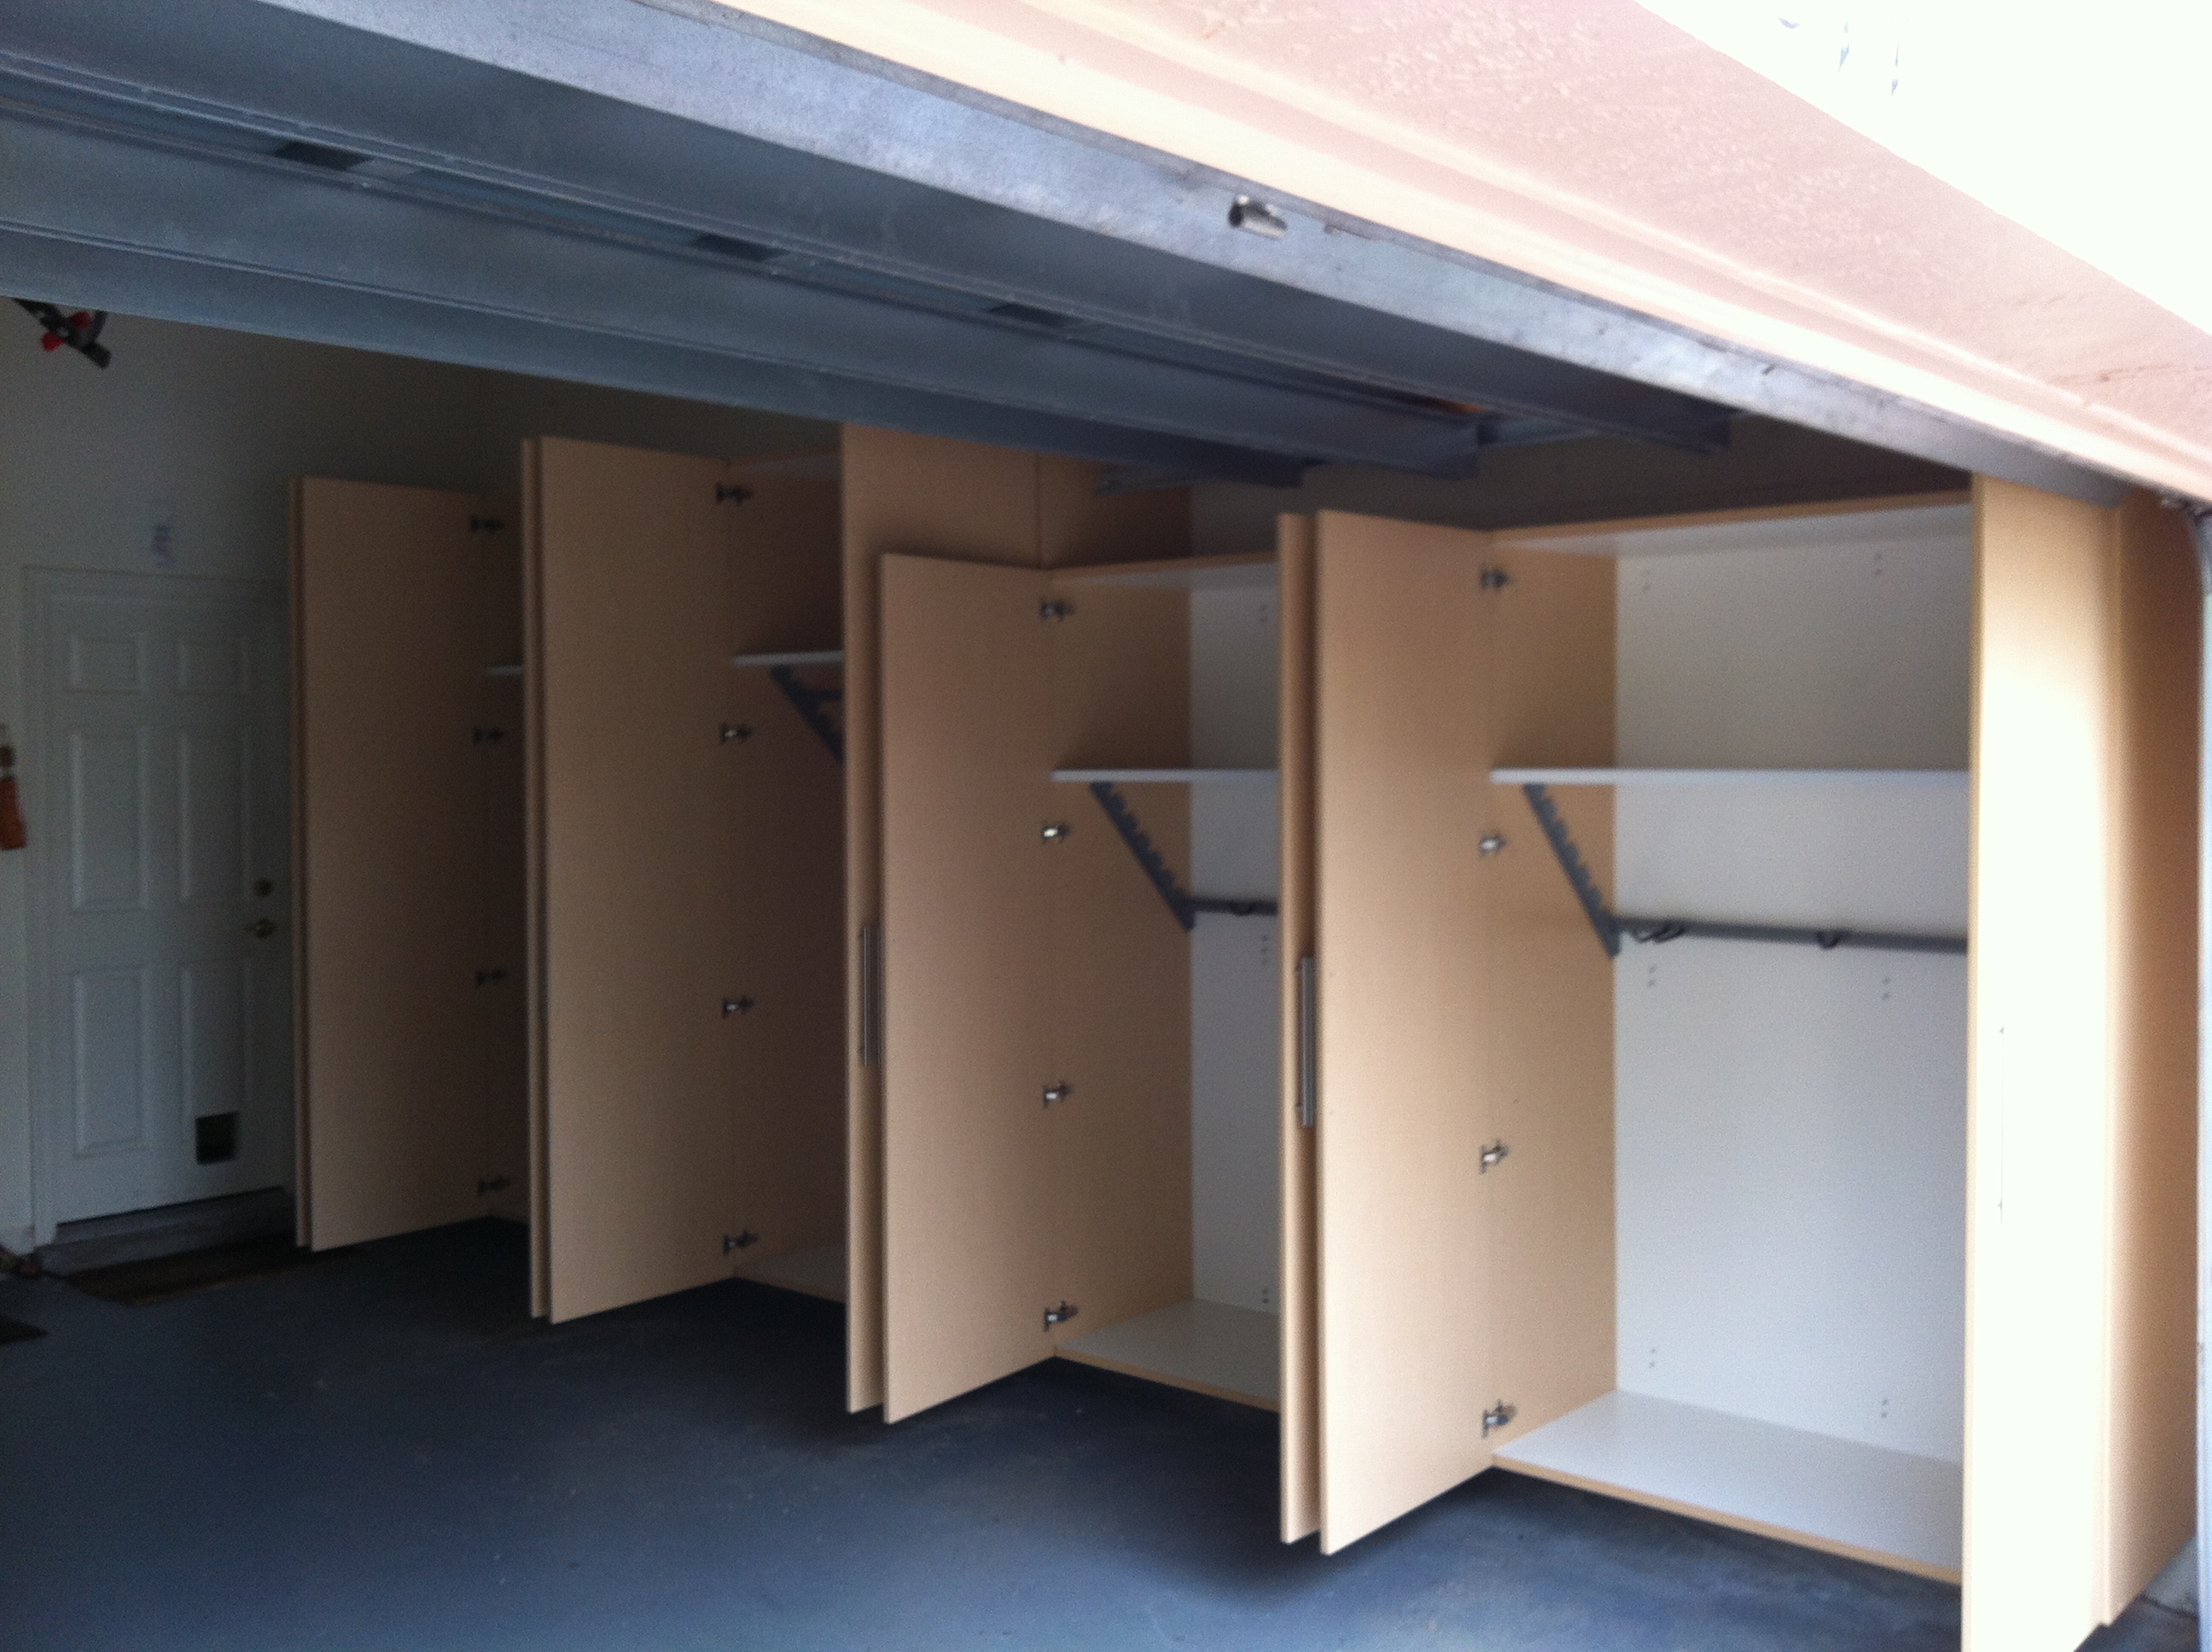 Hobe Sound Garage Cabinets